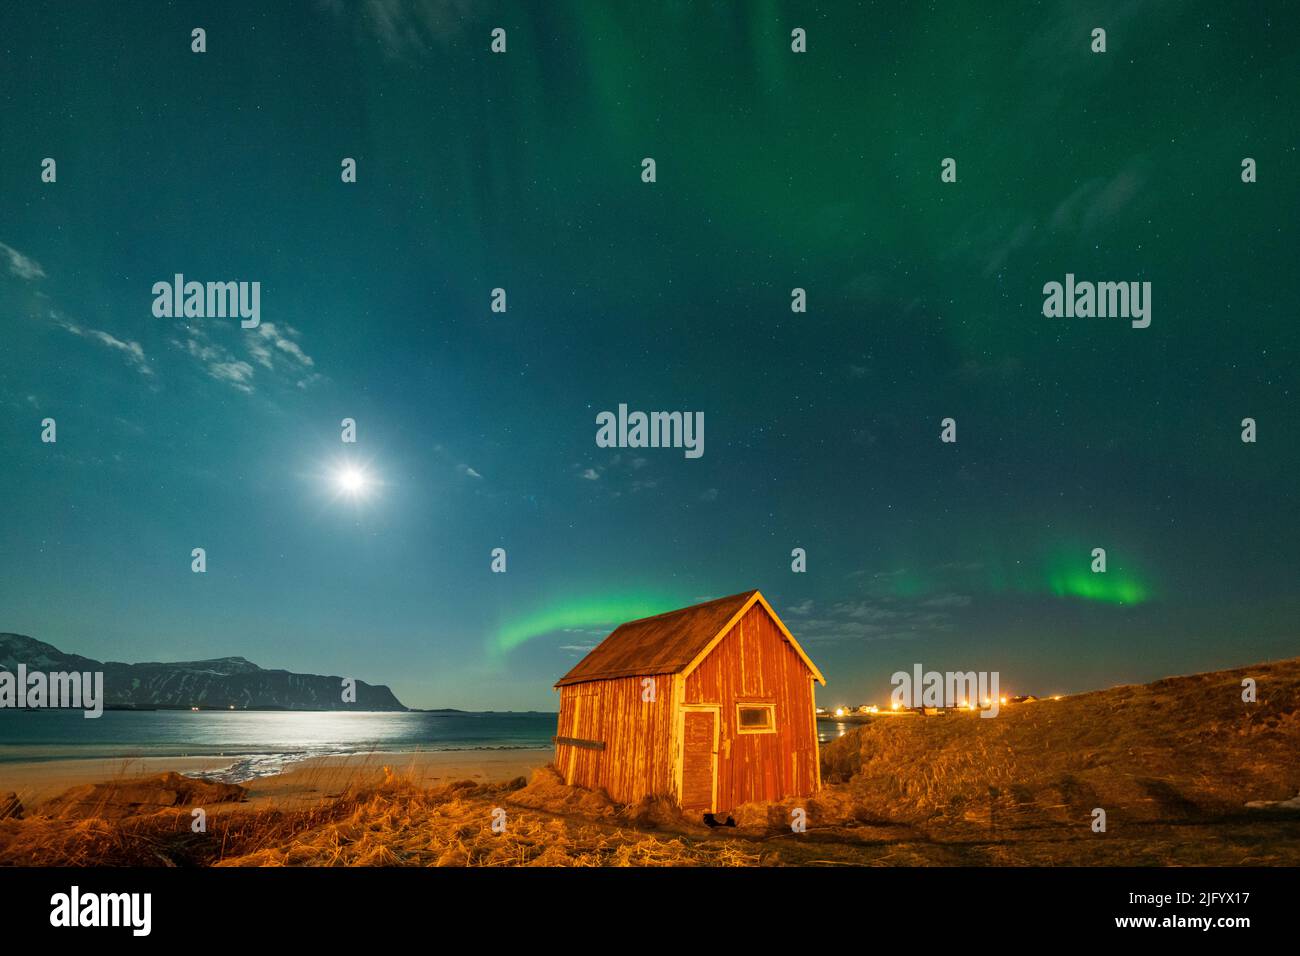 Cabine en bois rouge sur plage de sable éclairée par la lune pendant l'Aurora Borealis (aurores boréales), Ramberg, comté de Nordland, îles Lofoten, Norvège, Scandinavie Banque D'Images